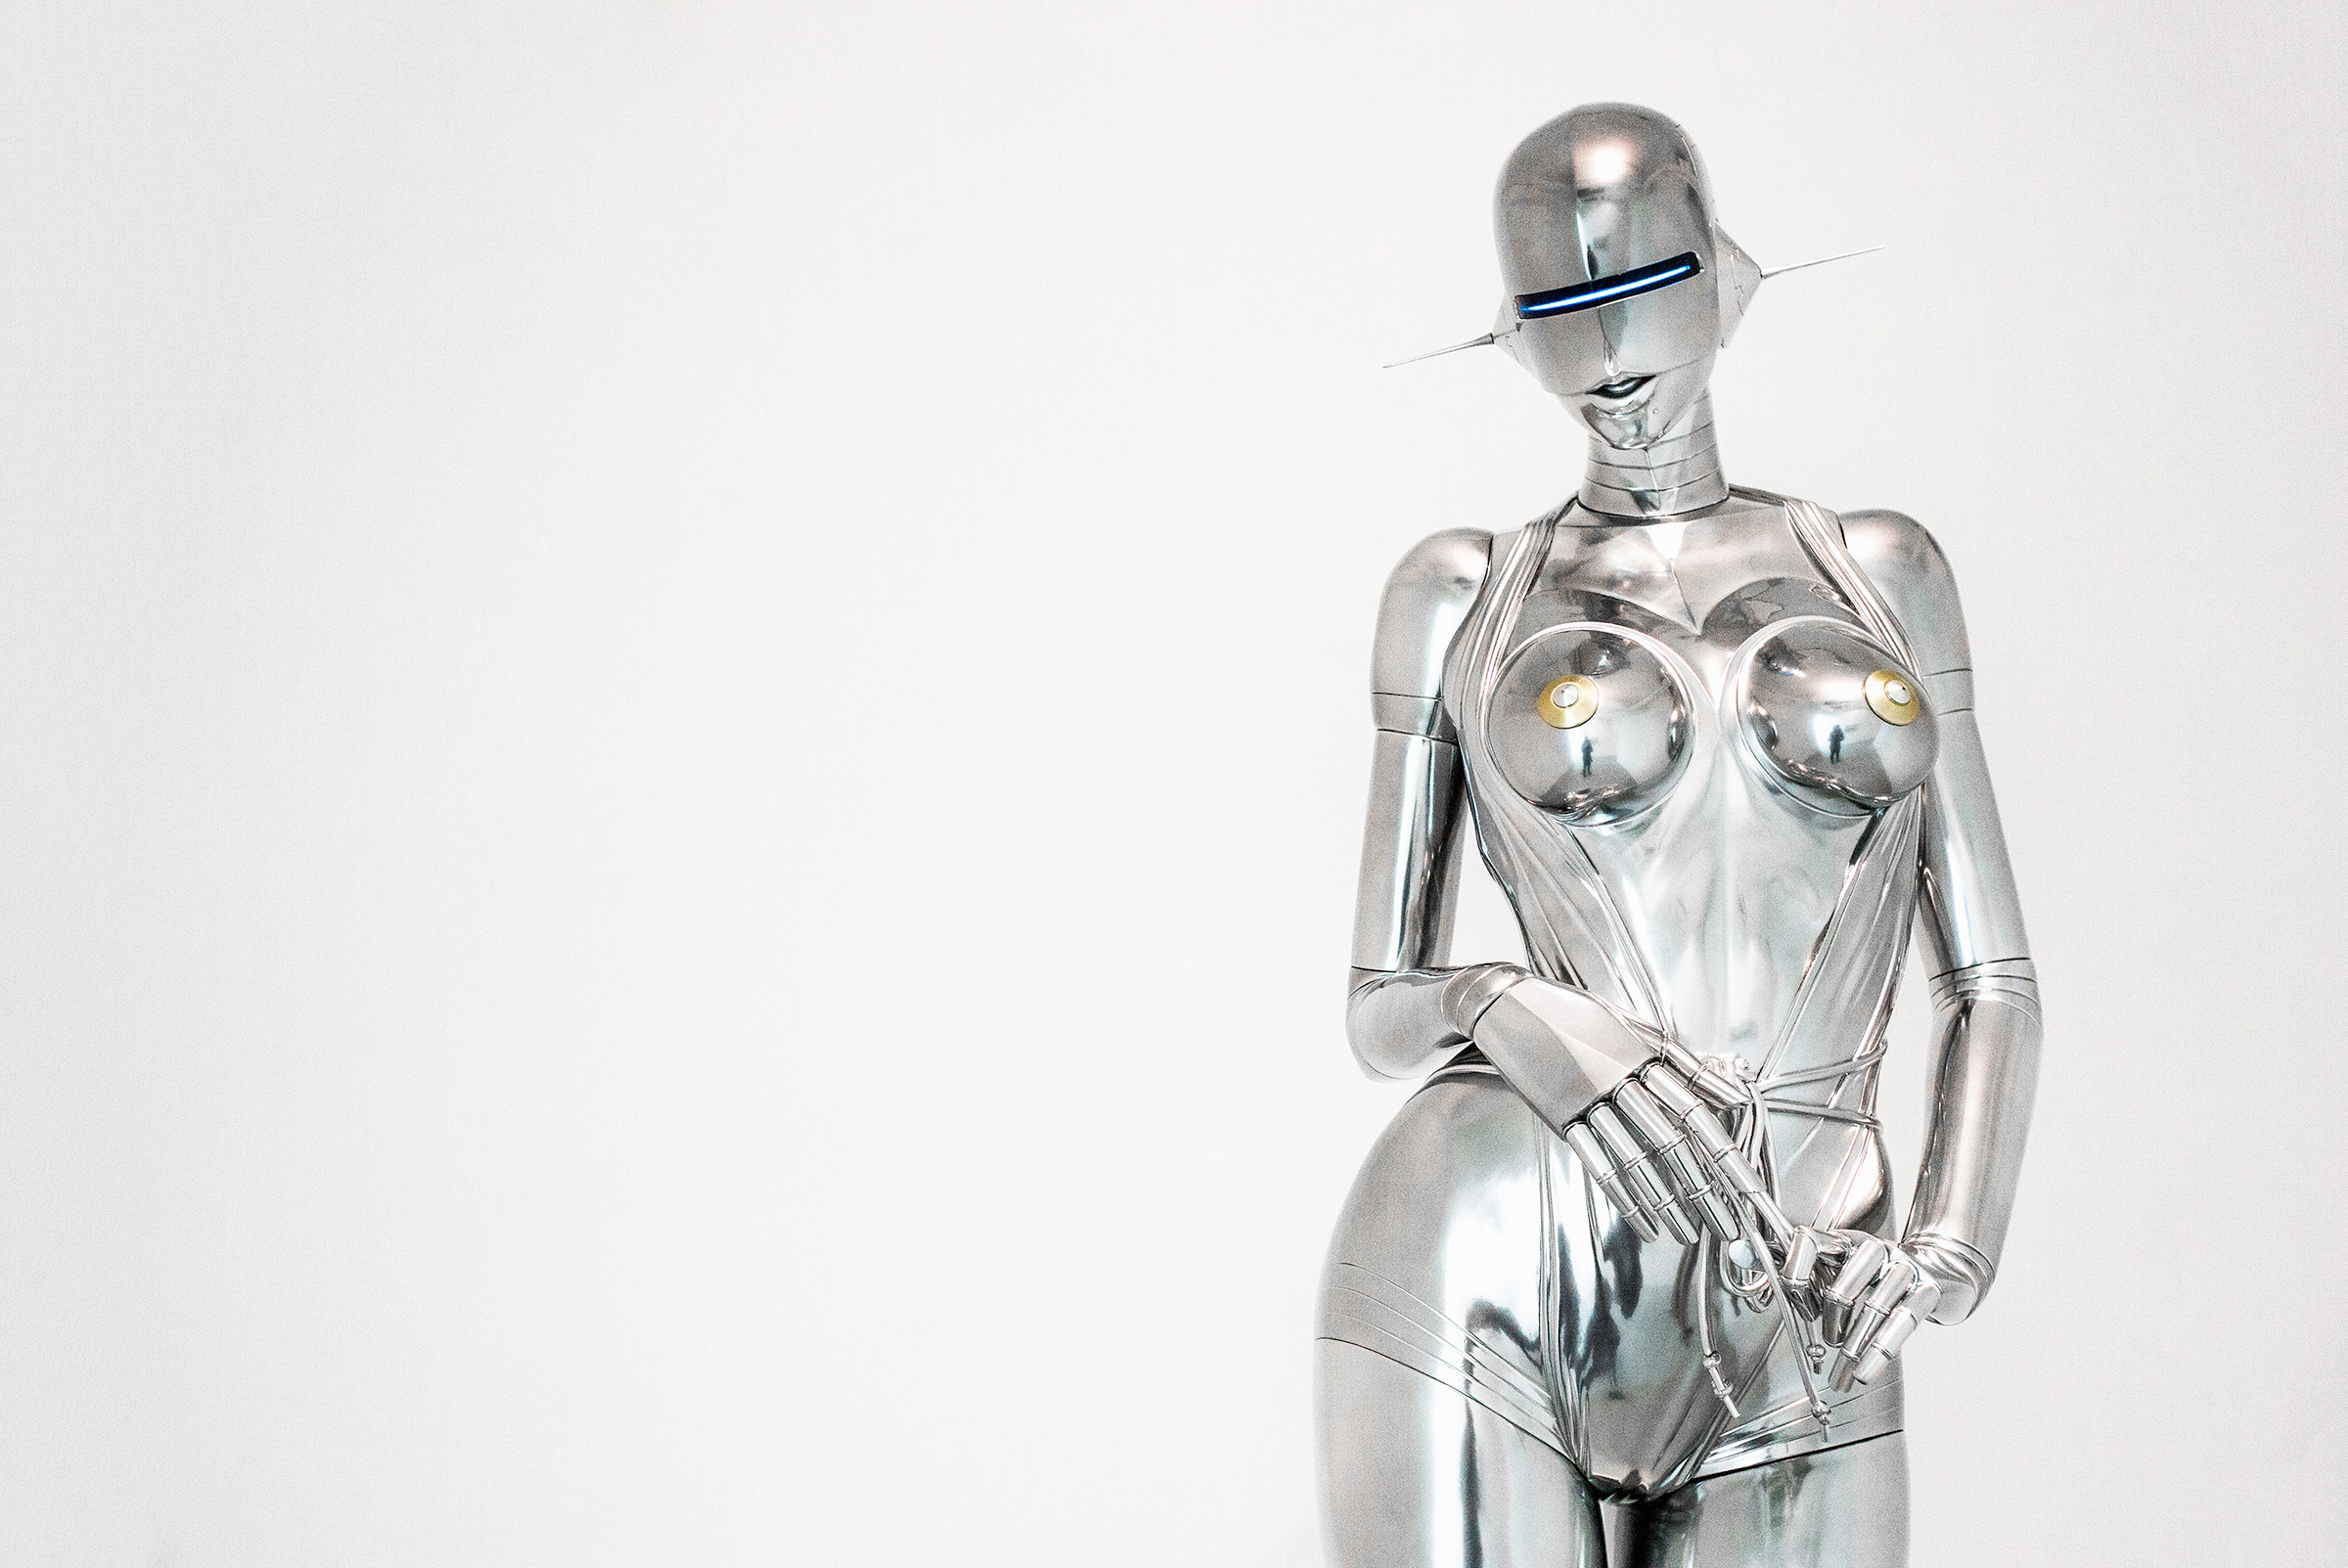 Sexy silver robot.